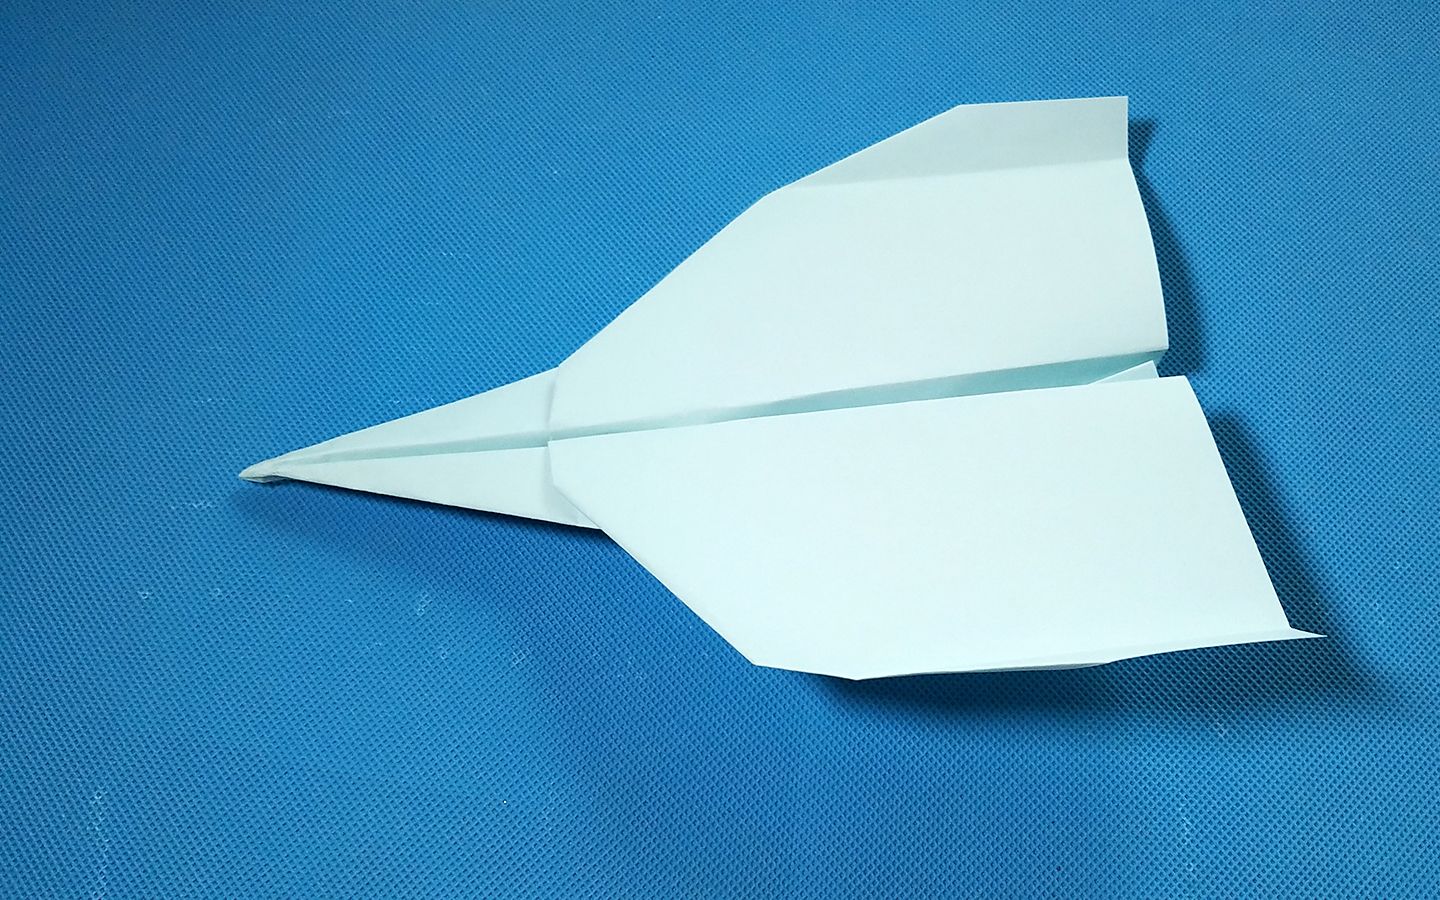 折纸王子:能飞很远的折纸飞机 第二款 讲解详细 清楚易学 形象逼真 跟